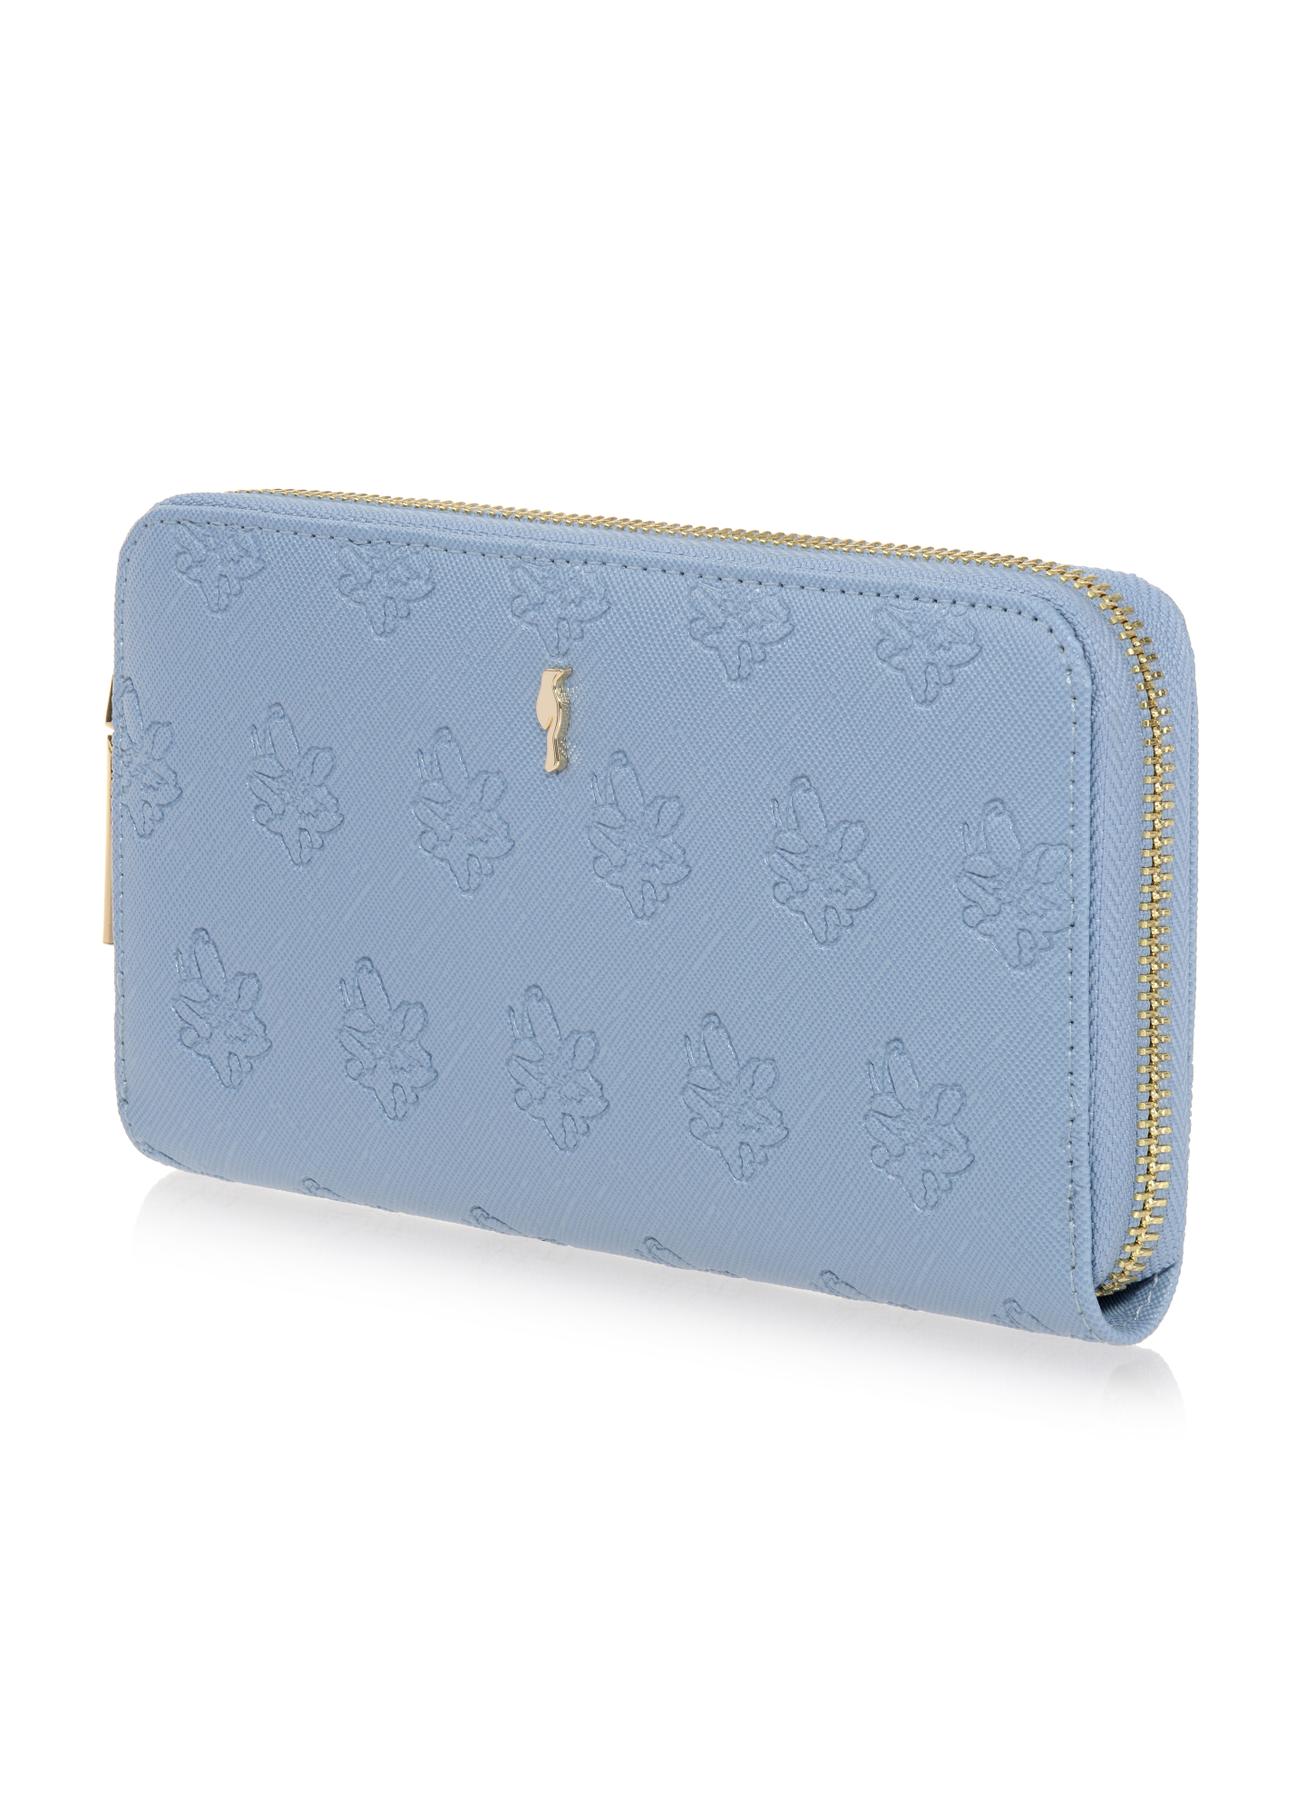 Duży błękitny portfel damski z tłoczeniem POREC-0329-61(W23)